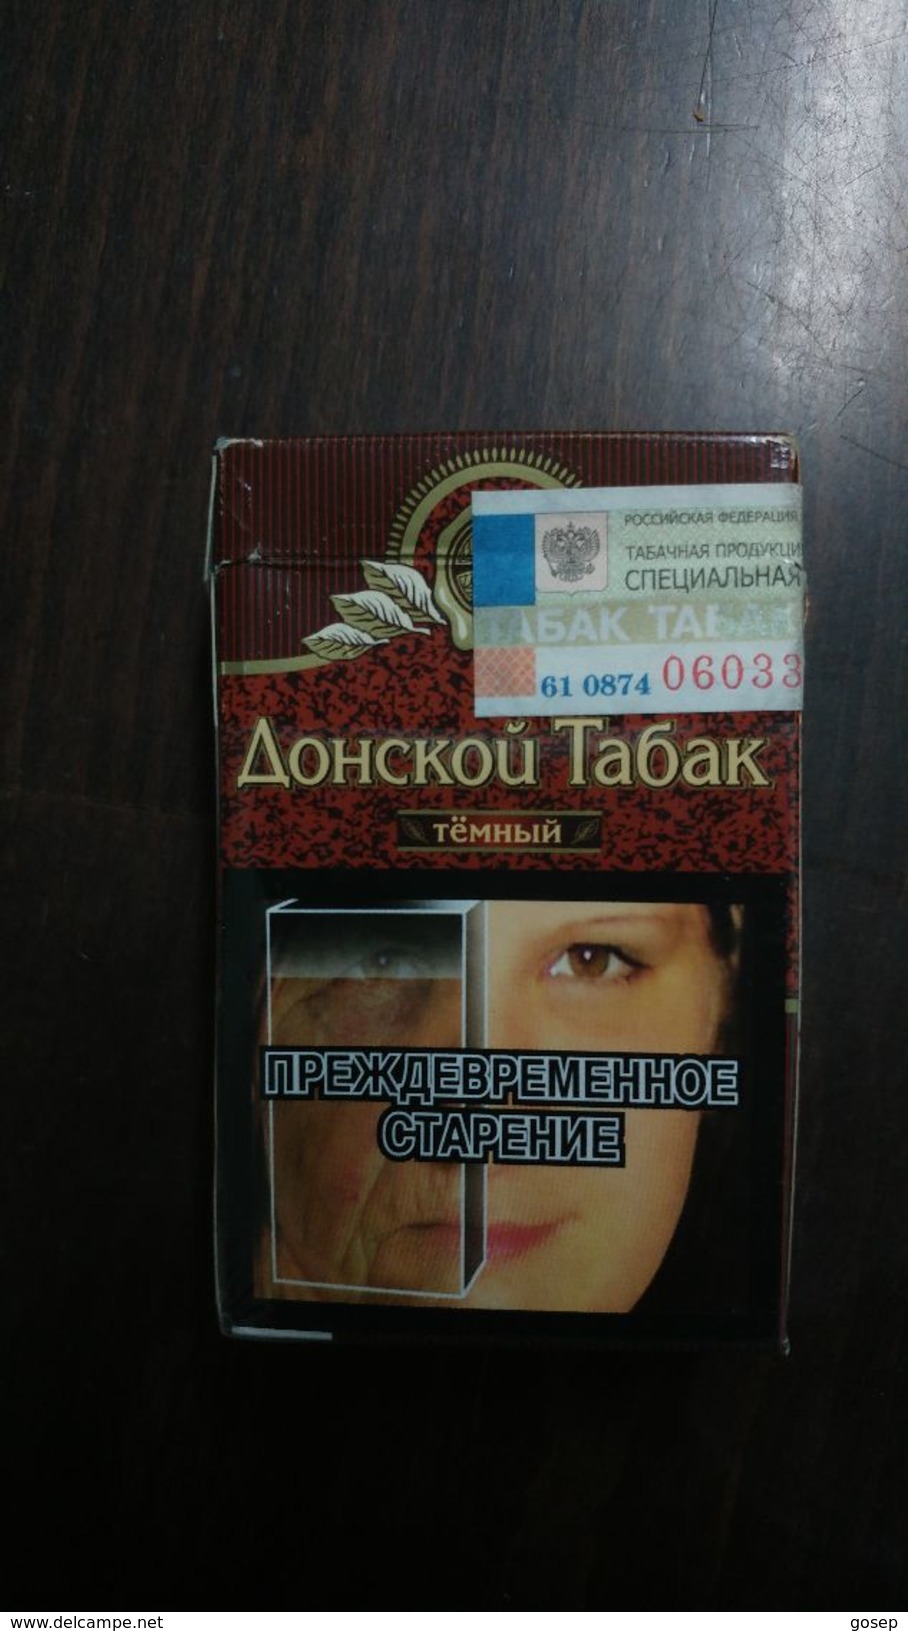 Russia-box Empty Cigarette-aohckou Tabak-(1) - Empty Cigarettes Boxes